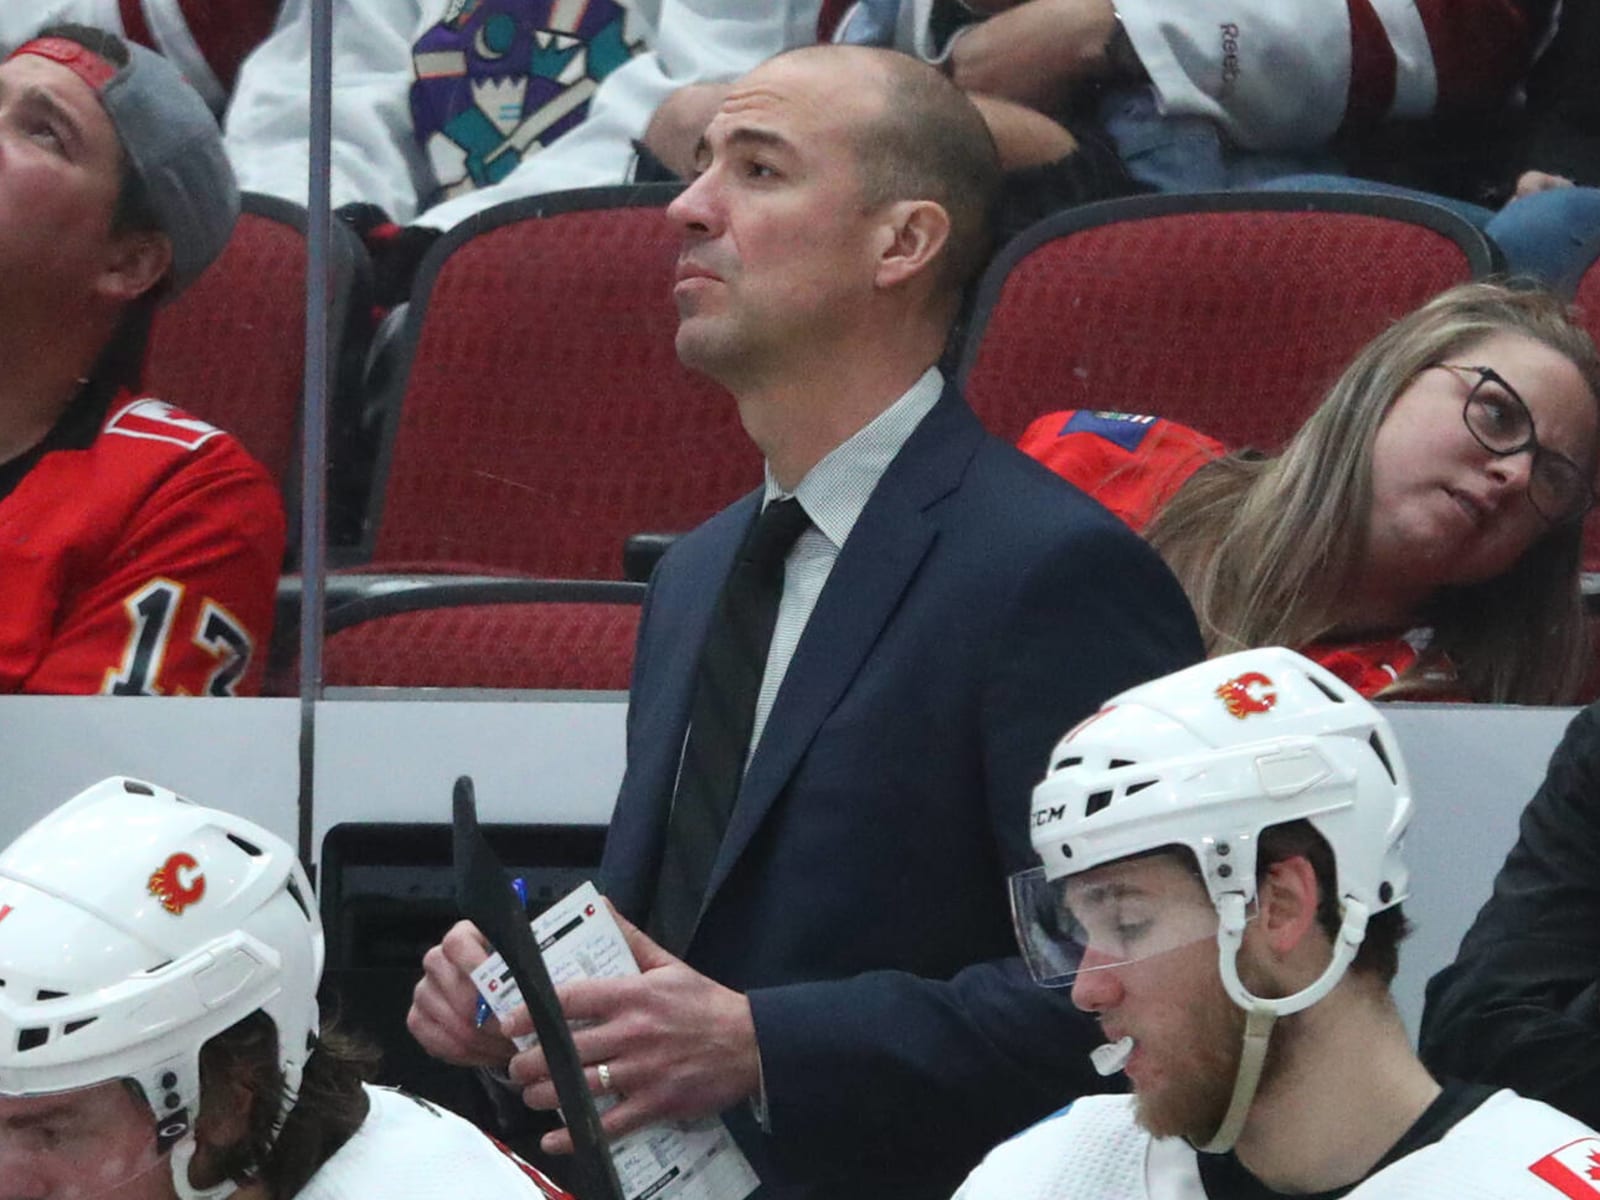 Calgary Flames hire Dan Lambert, Marc Savard as assistant coaches